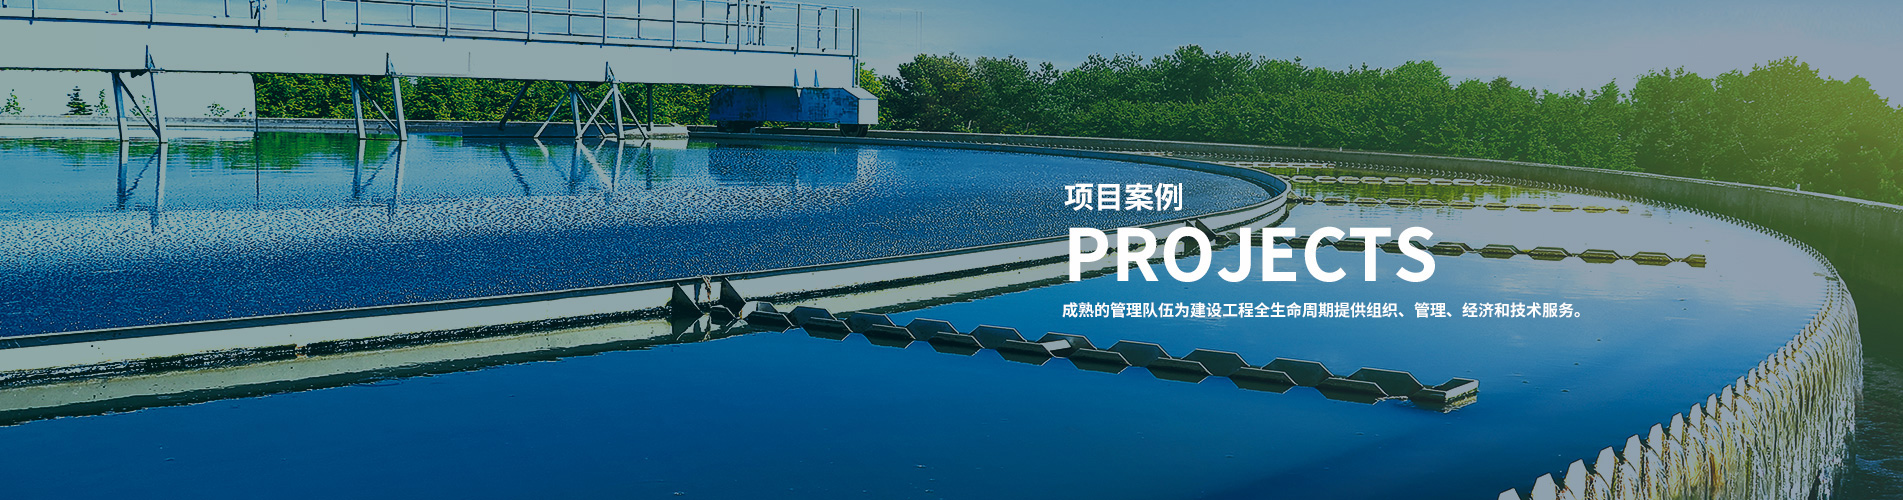 污水处理设备工程设计,水厂智能投加系统,深圳污水处理厂设备